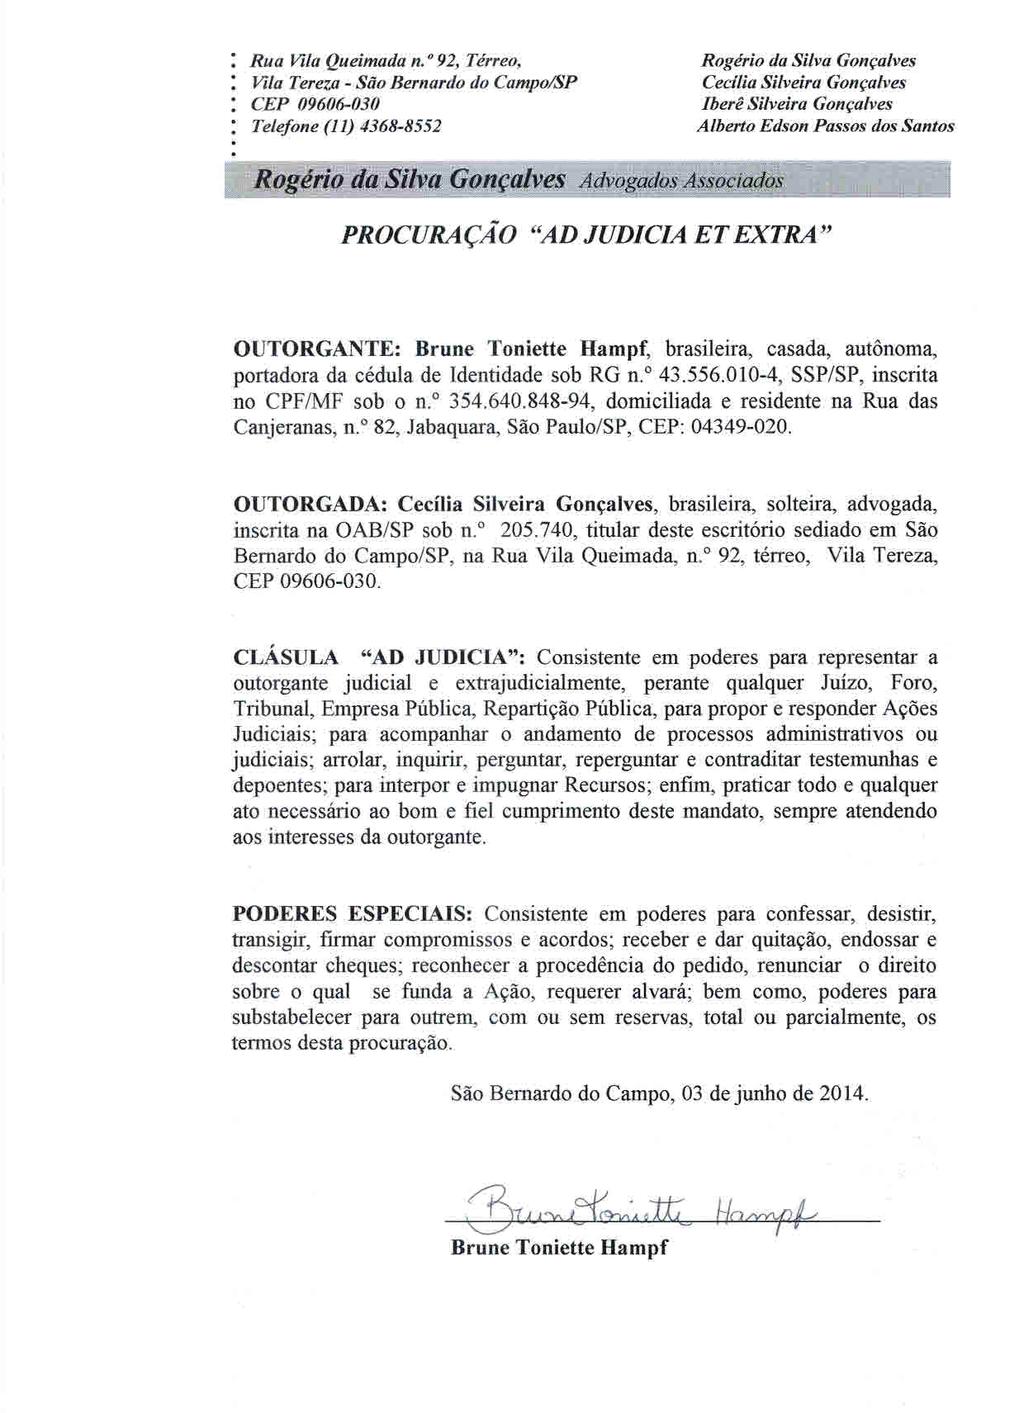 fls. 7 Este documento é cópia do original, assinado digitalmente por CECILIA SILVEIRA GONCALVES e Tribunal de Justica Sao Paulo, protocolado em 18/08/2014 às 16:11, sob o número